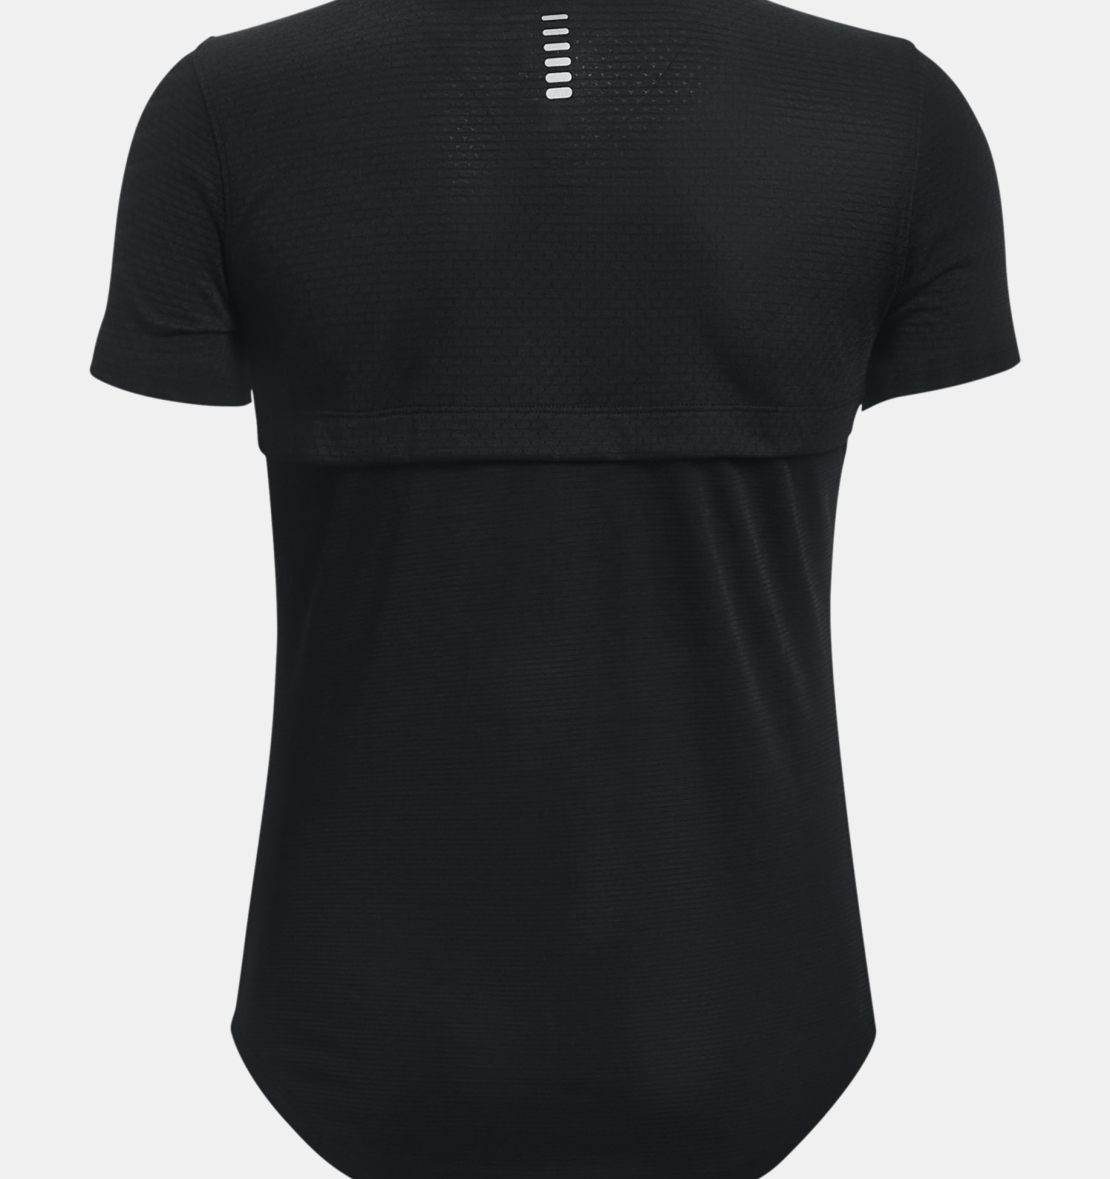 חולצת אנדר ארמור לנשים, UA Tech V-Neck T-Shirt